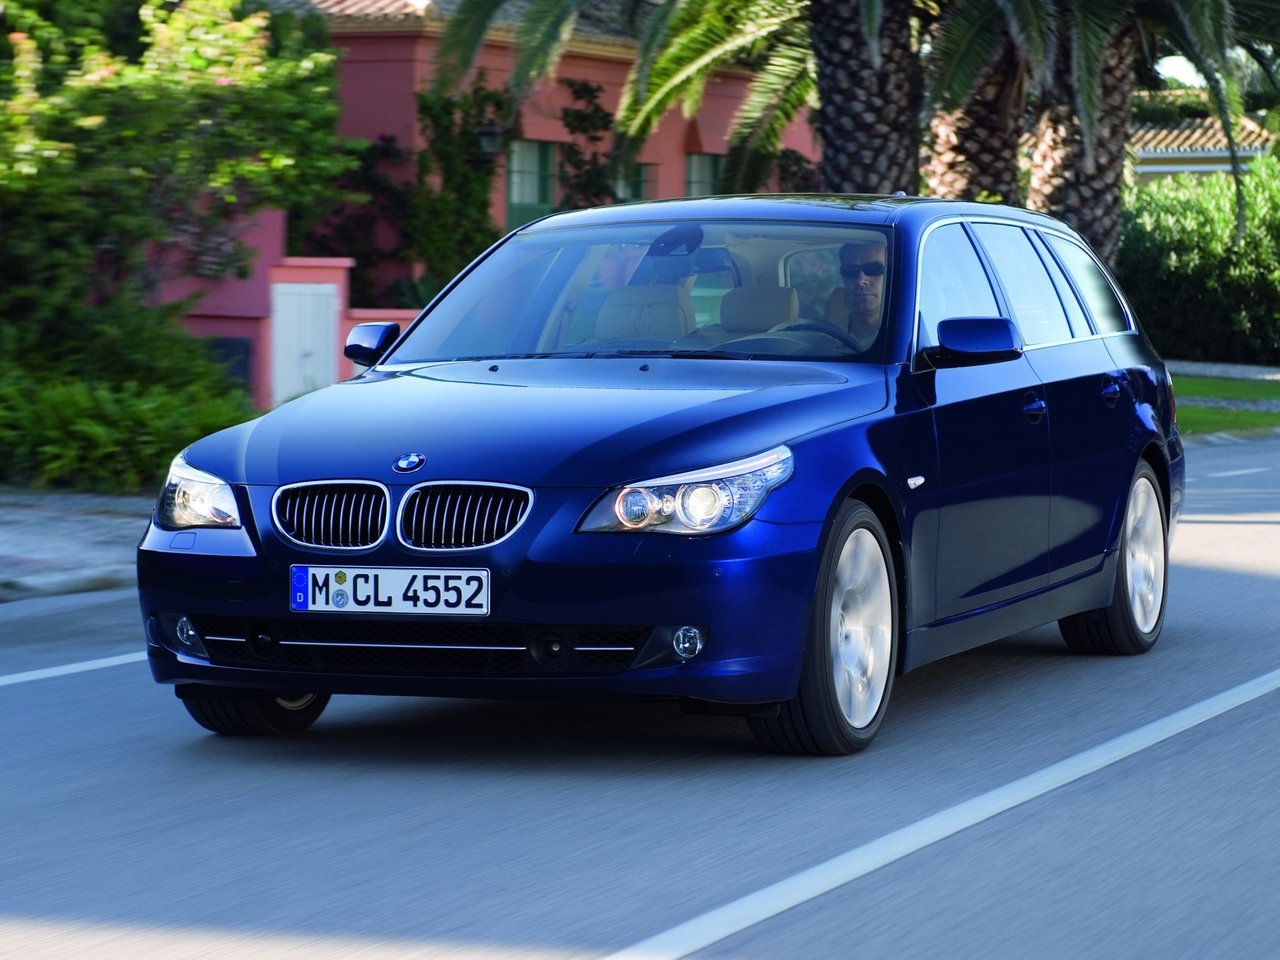 Расход газа девяти комплектаций универсала пять дверей BMW 5 серия. Разница стоимости заправки газом и бензином. Автономный пробег до и после установки ГБО.